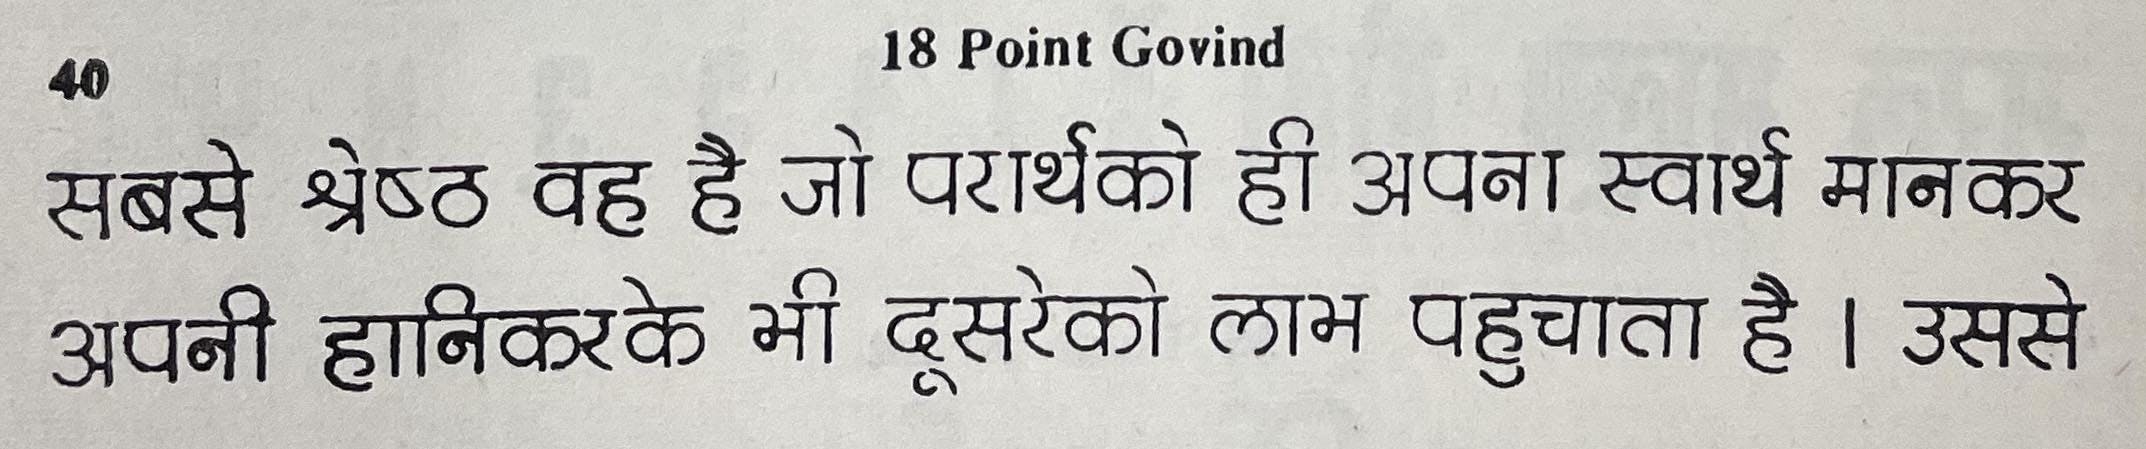 18 Point Govind, Prakash Type Foundry